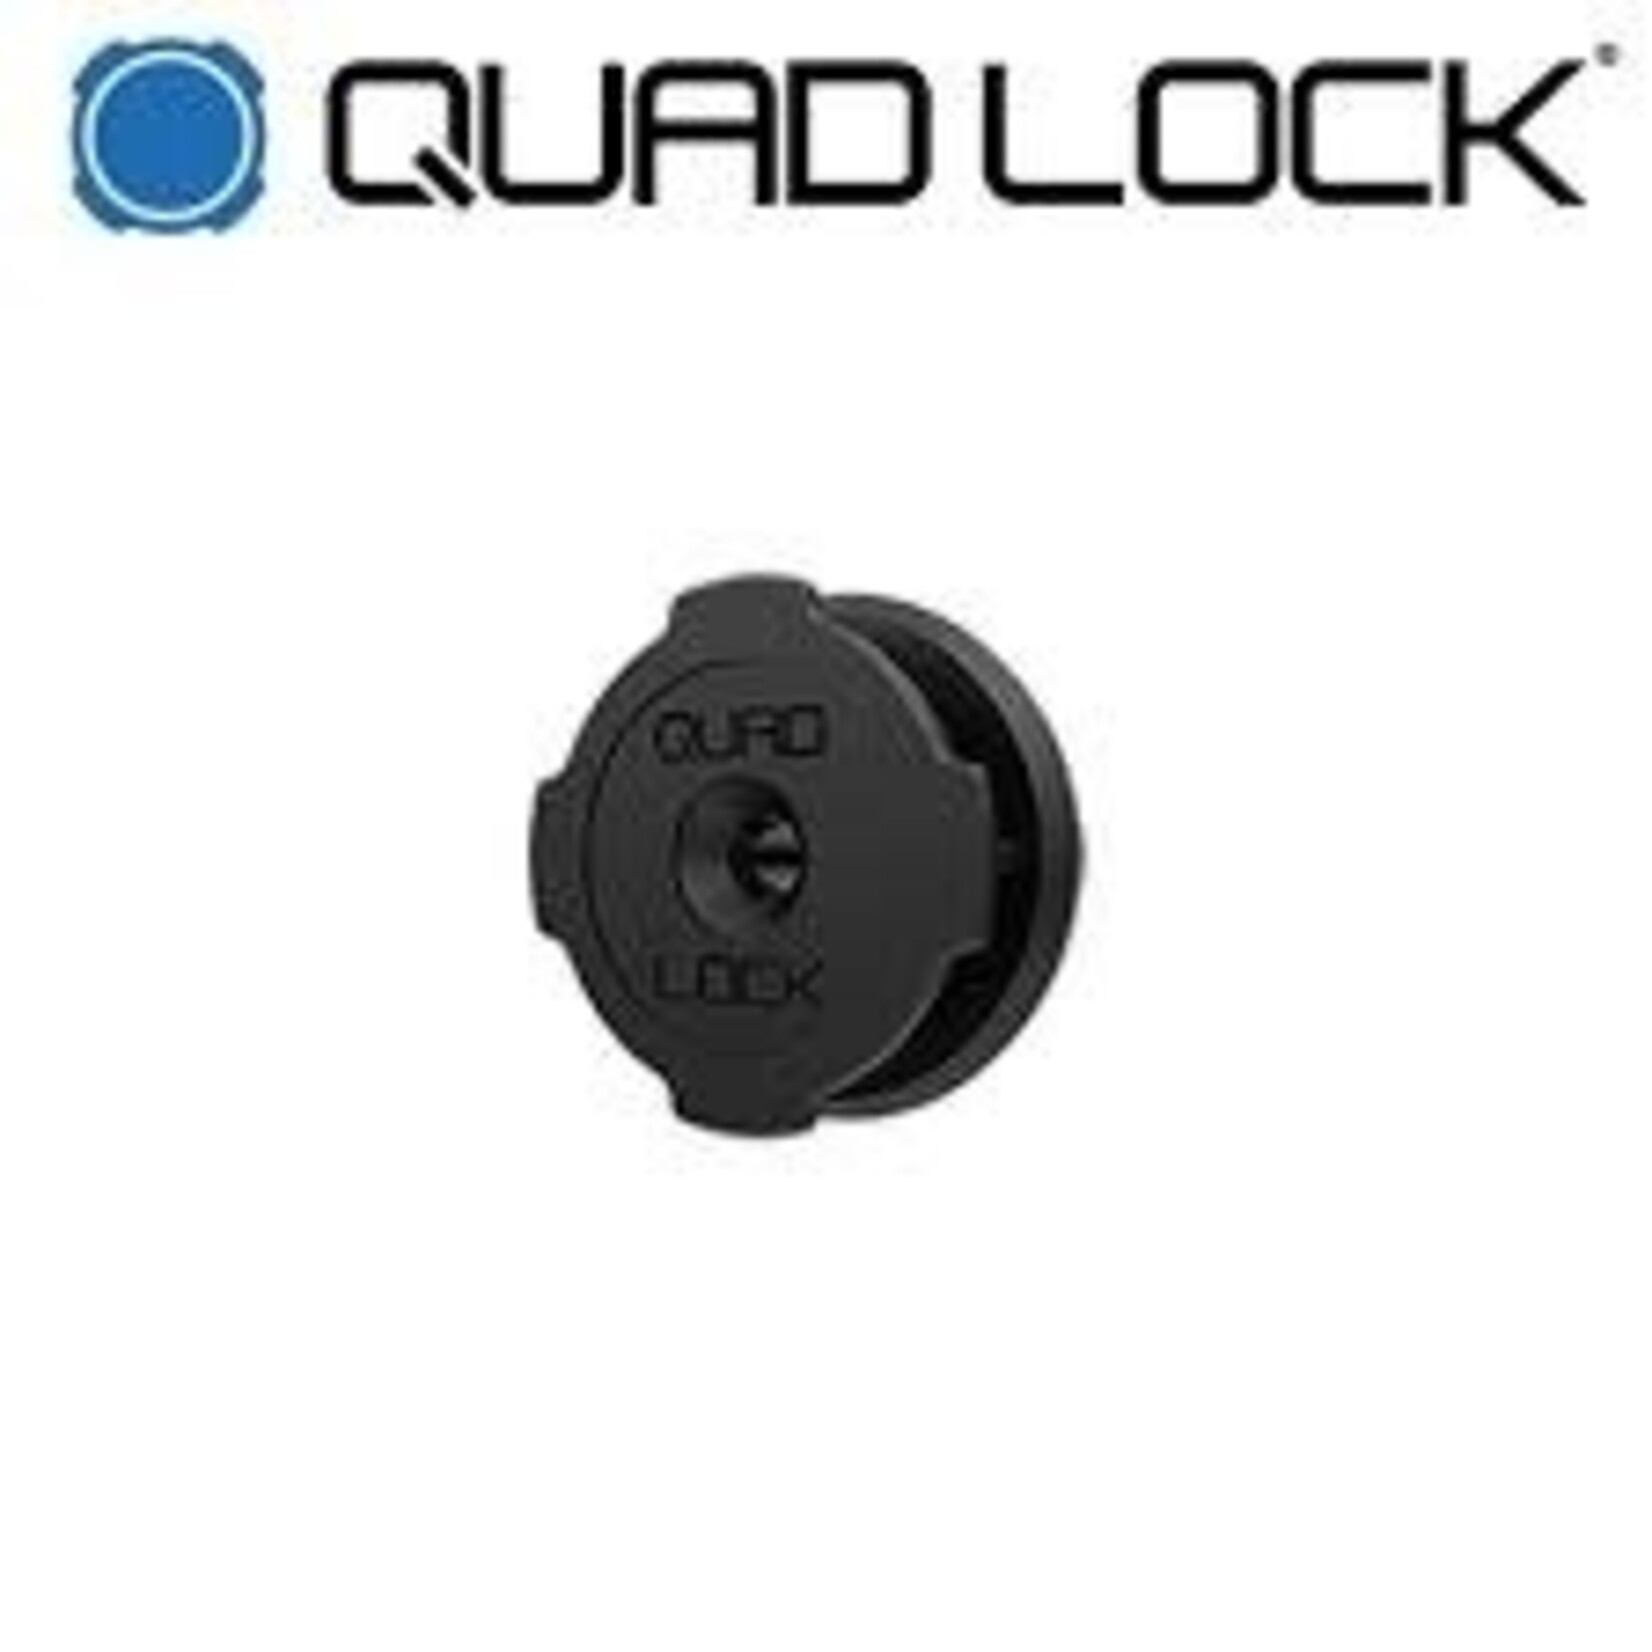 Quad Lock QUADLOCK Phone Mount